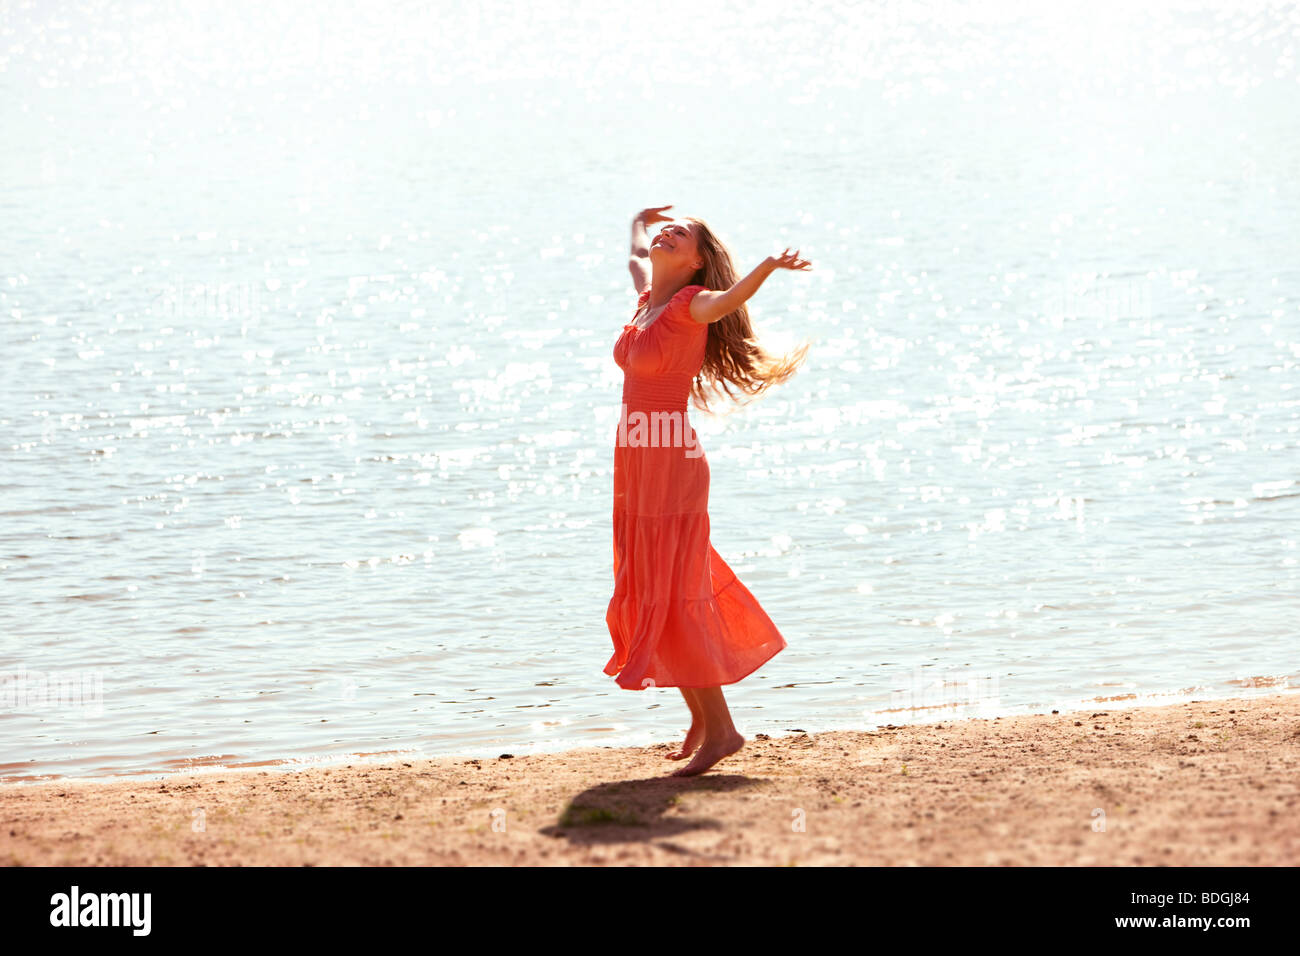 Femme dansant sur une plage avec l'abandon, les bras tendus. Banque D'Images